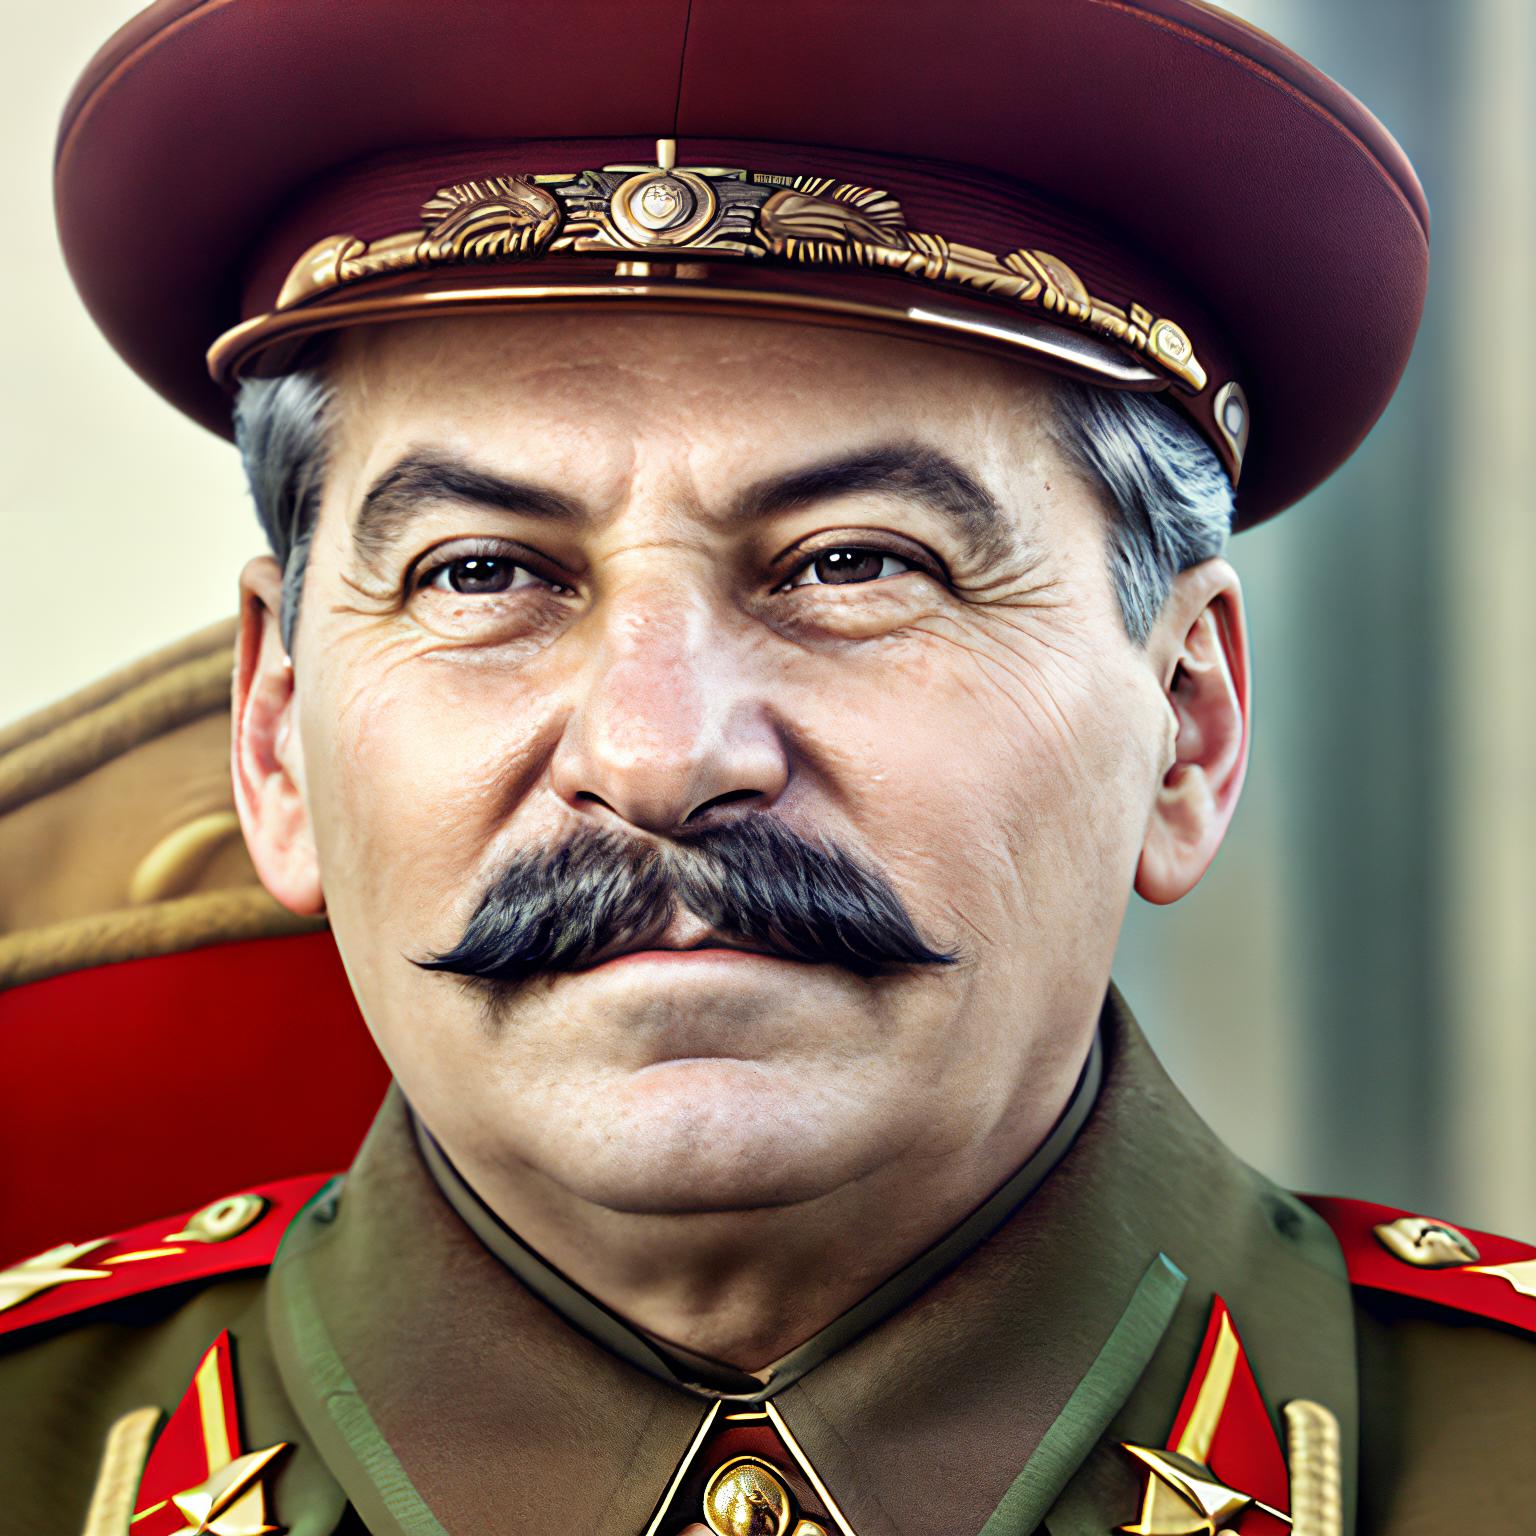 Stalin Diffusion image by rafik